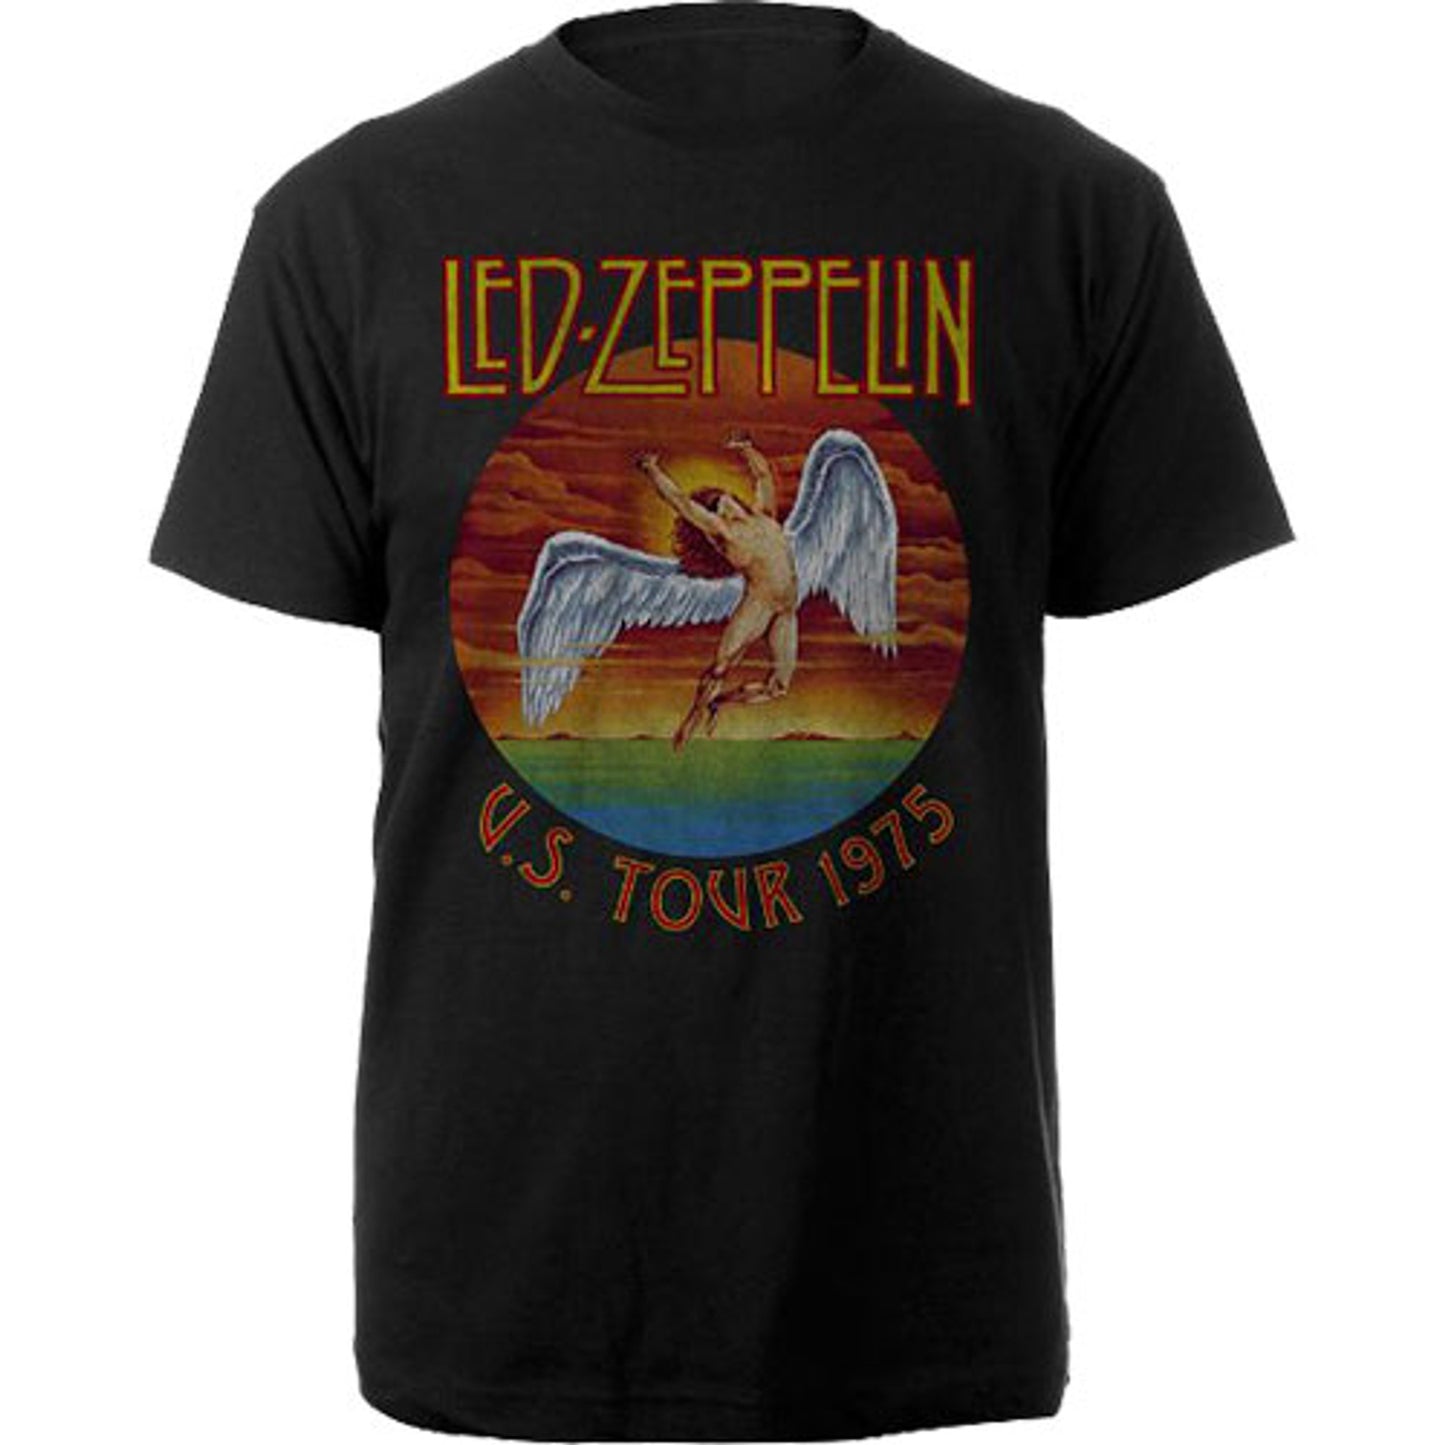 Led Zeppelin U.S. Tour 1975 T-Shirt